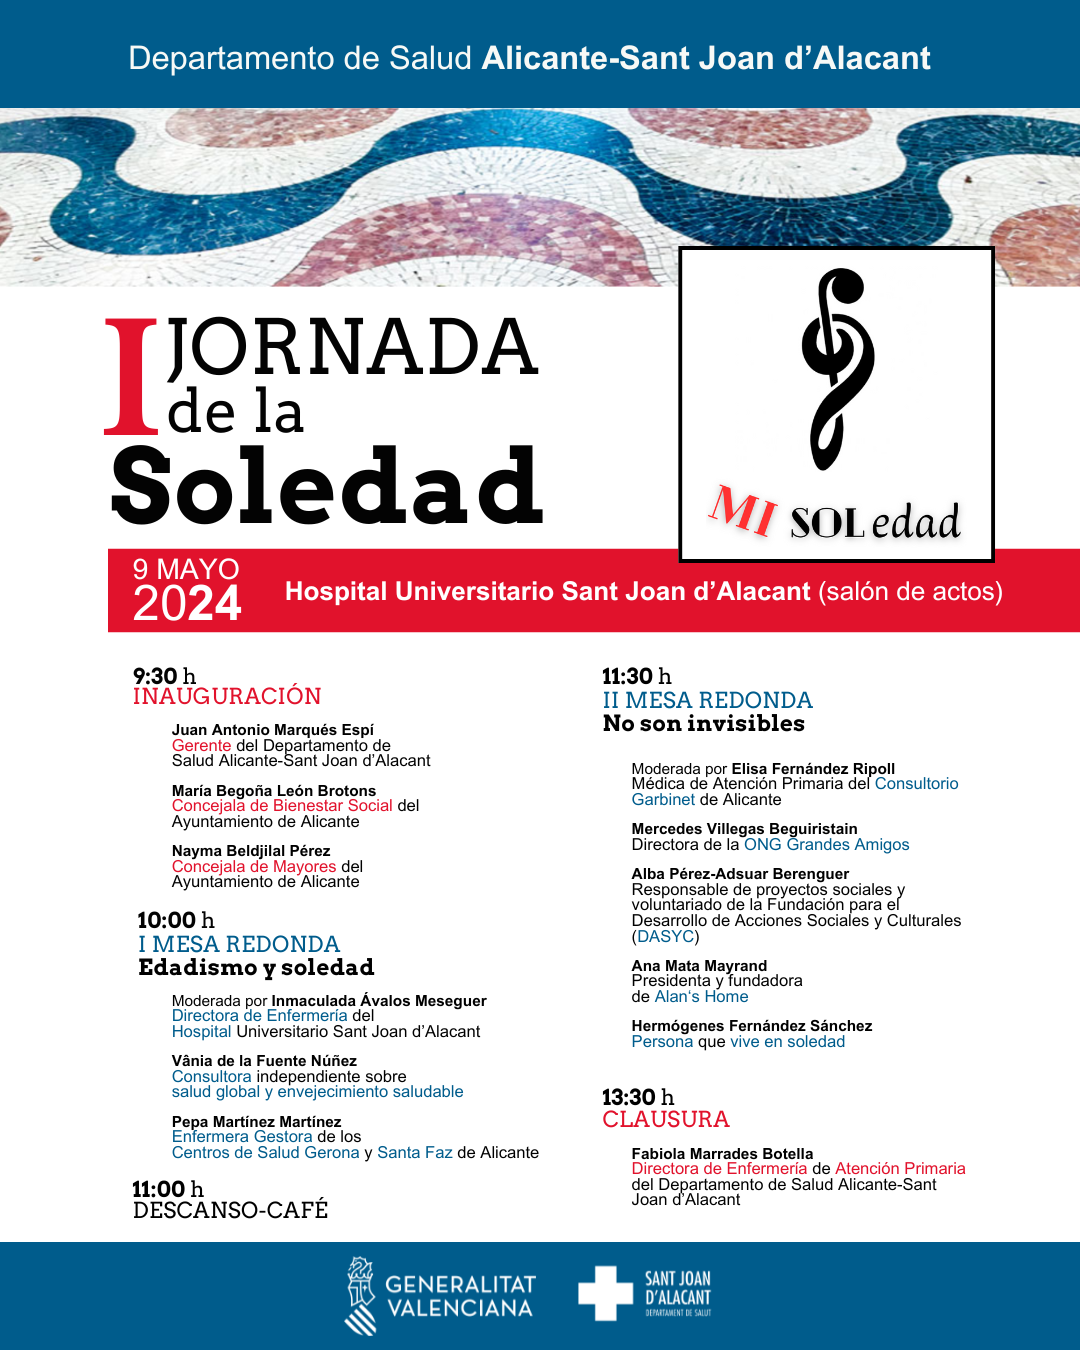 I Jornada de la Soledad 9 mayo 2024 Hospital Universitario Sant Joan d'Alacant